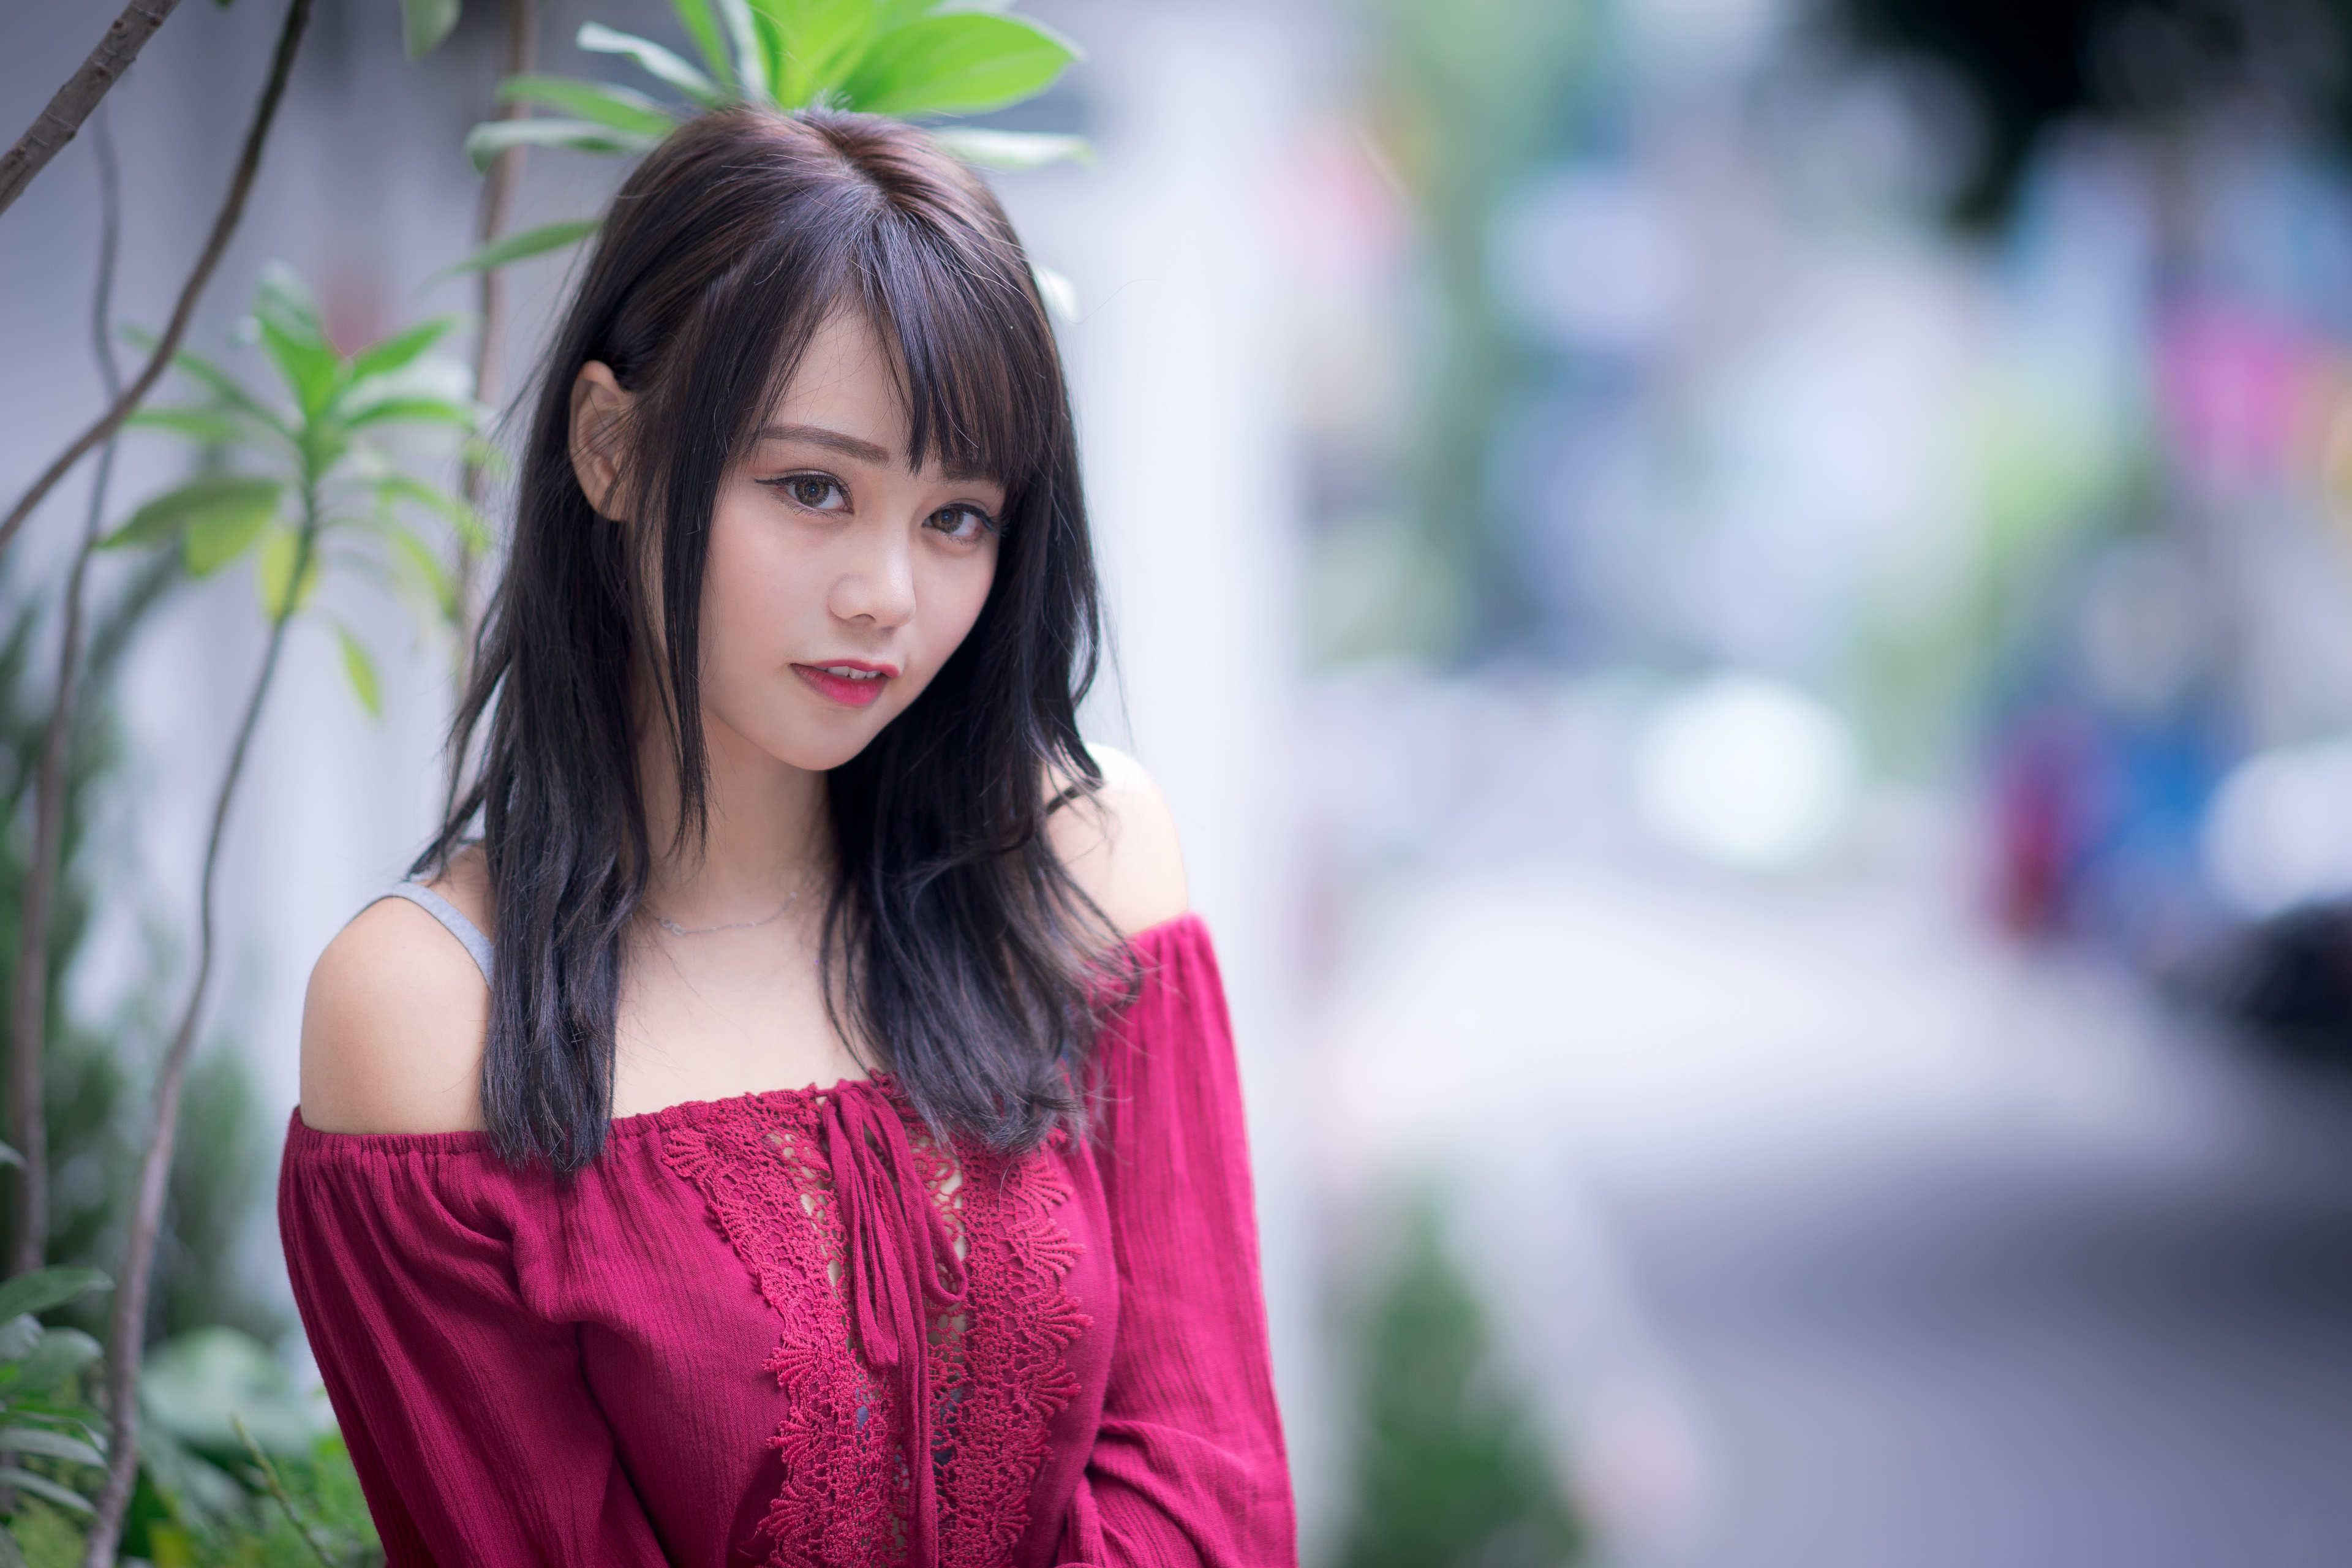 Asian Model Women Long Hair Brunette Depth Of Field Bare Shoulders Red Dress Branch Leaves Looking A 3840x2560